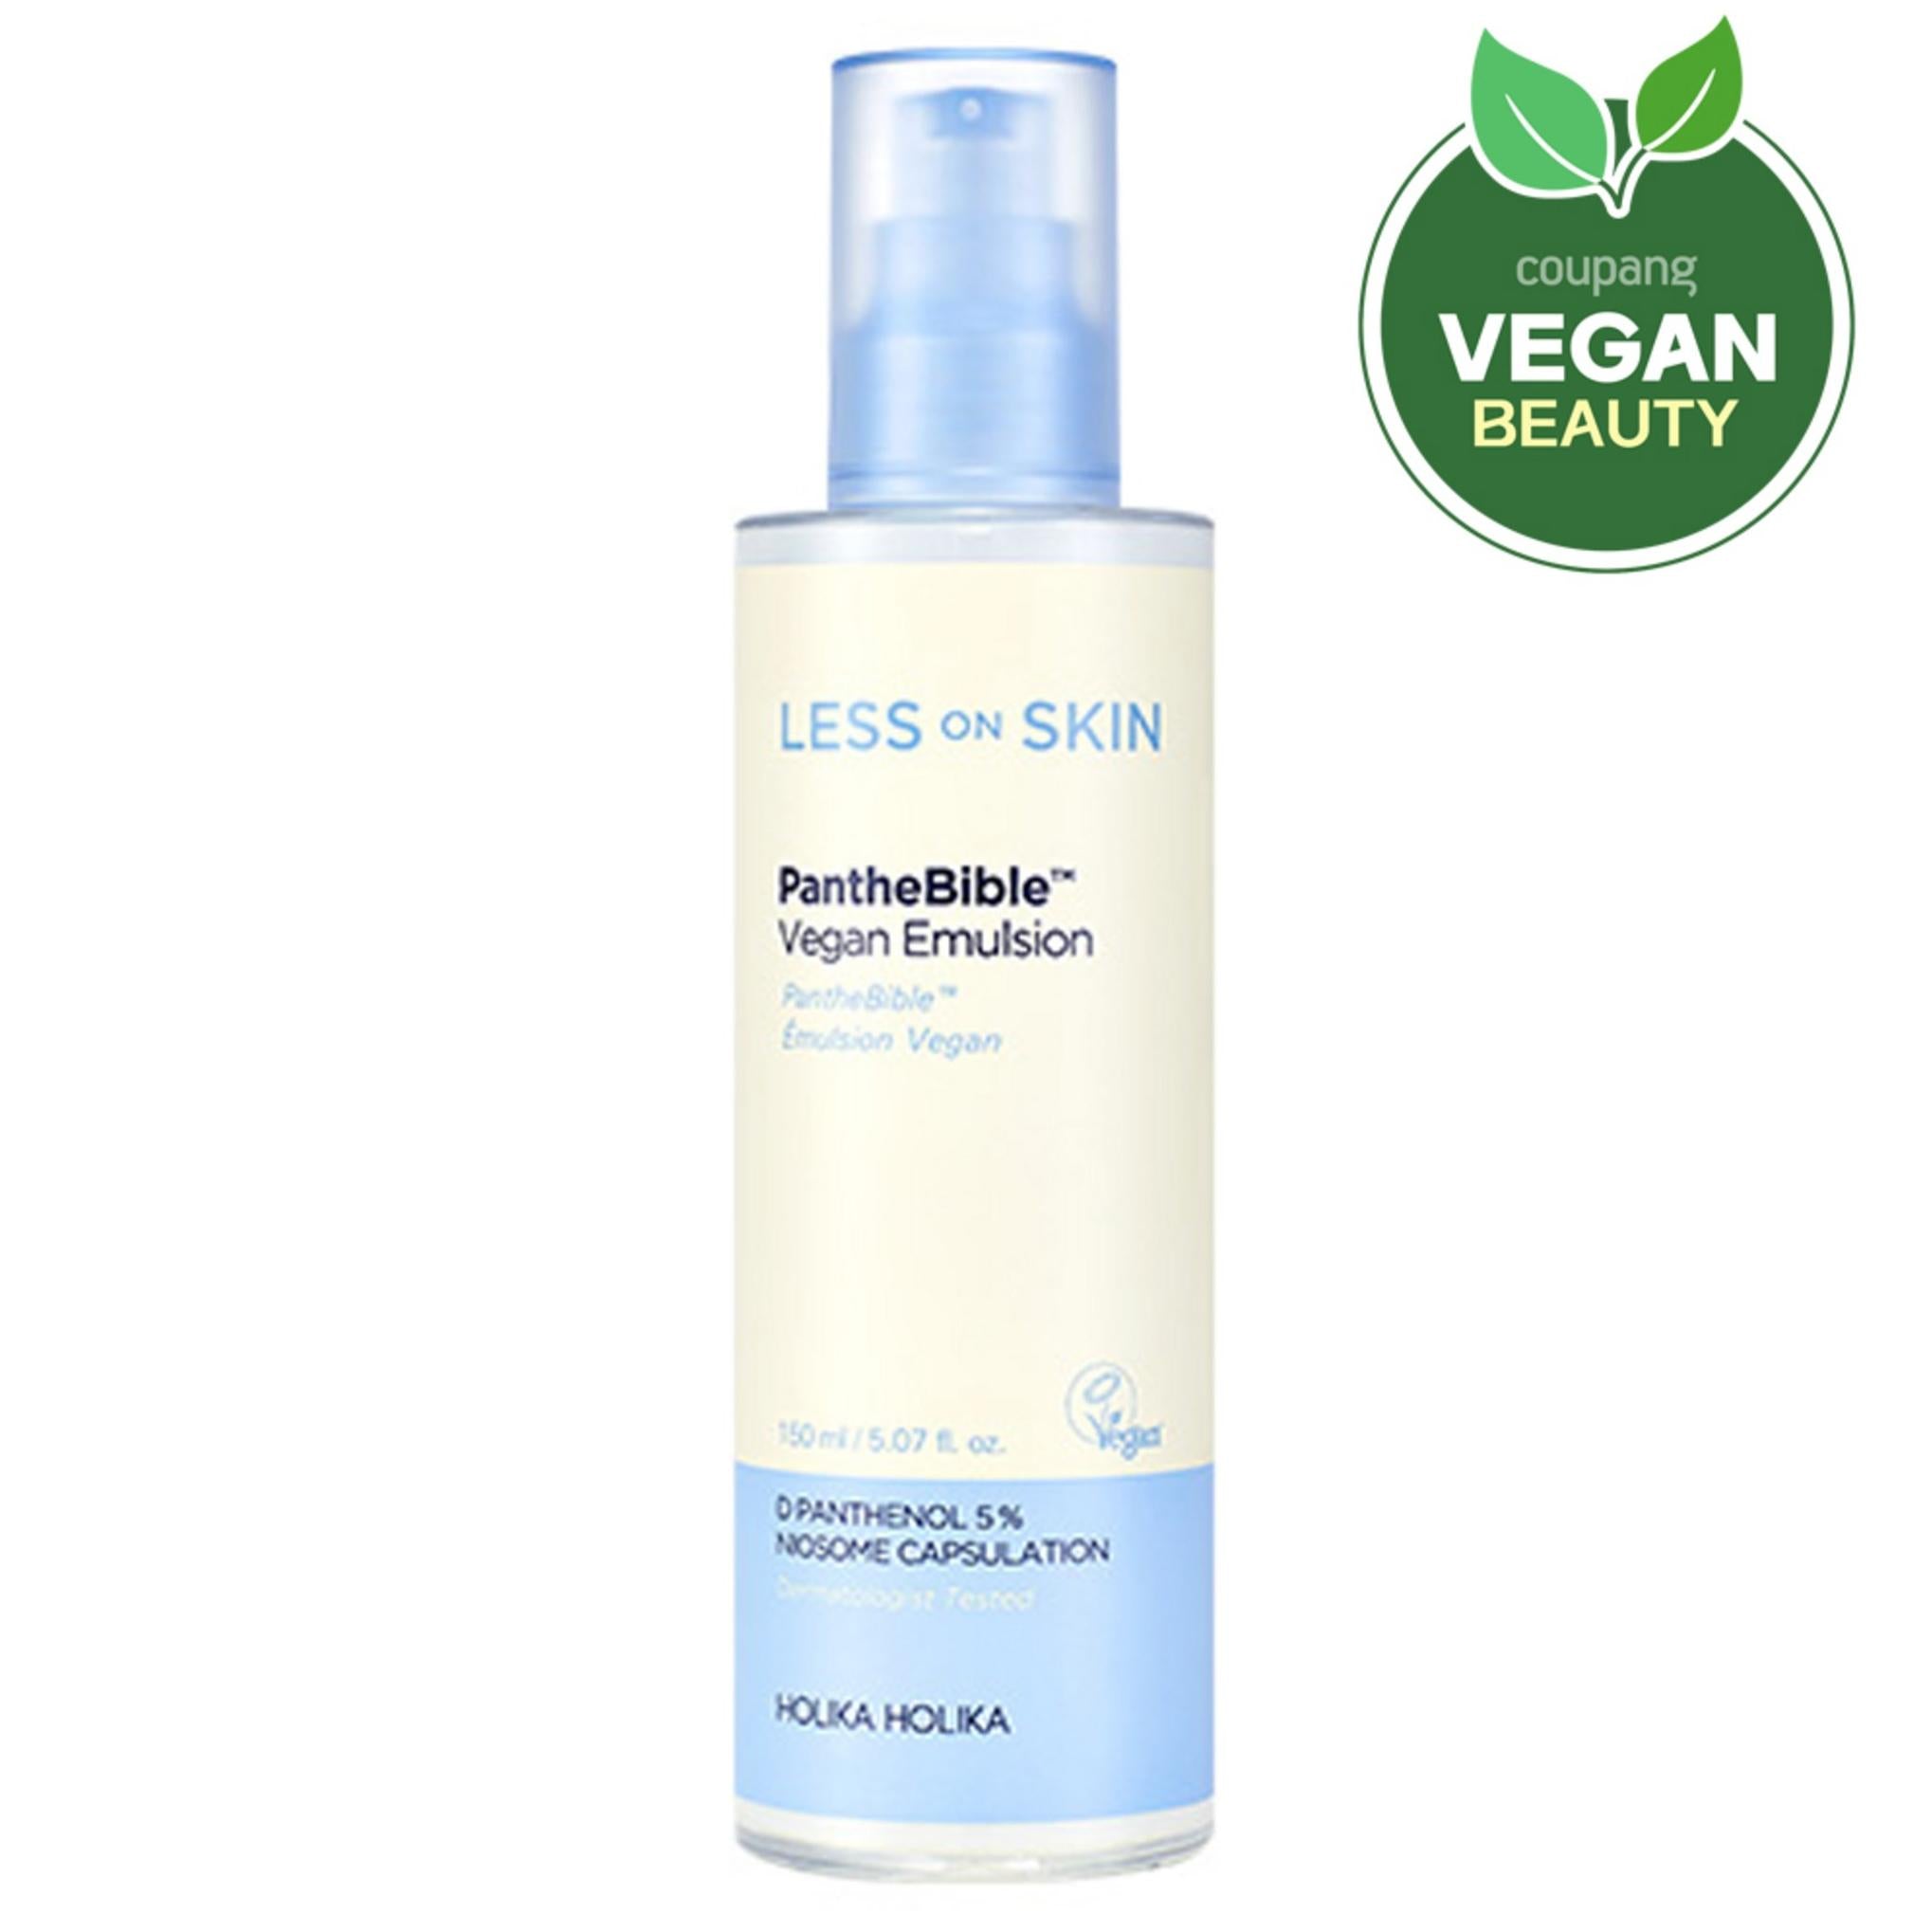 Holika Holika Less On Skin Panthebible Vegan Emulsion